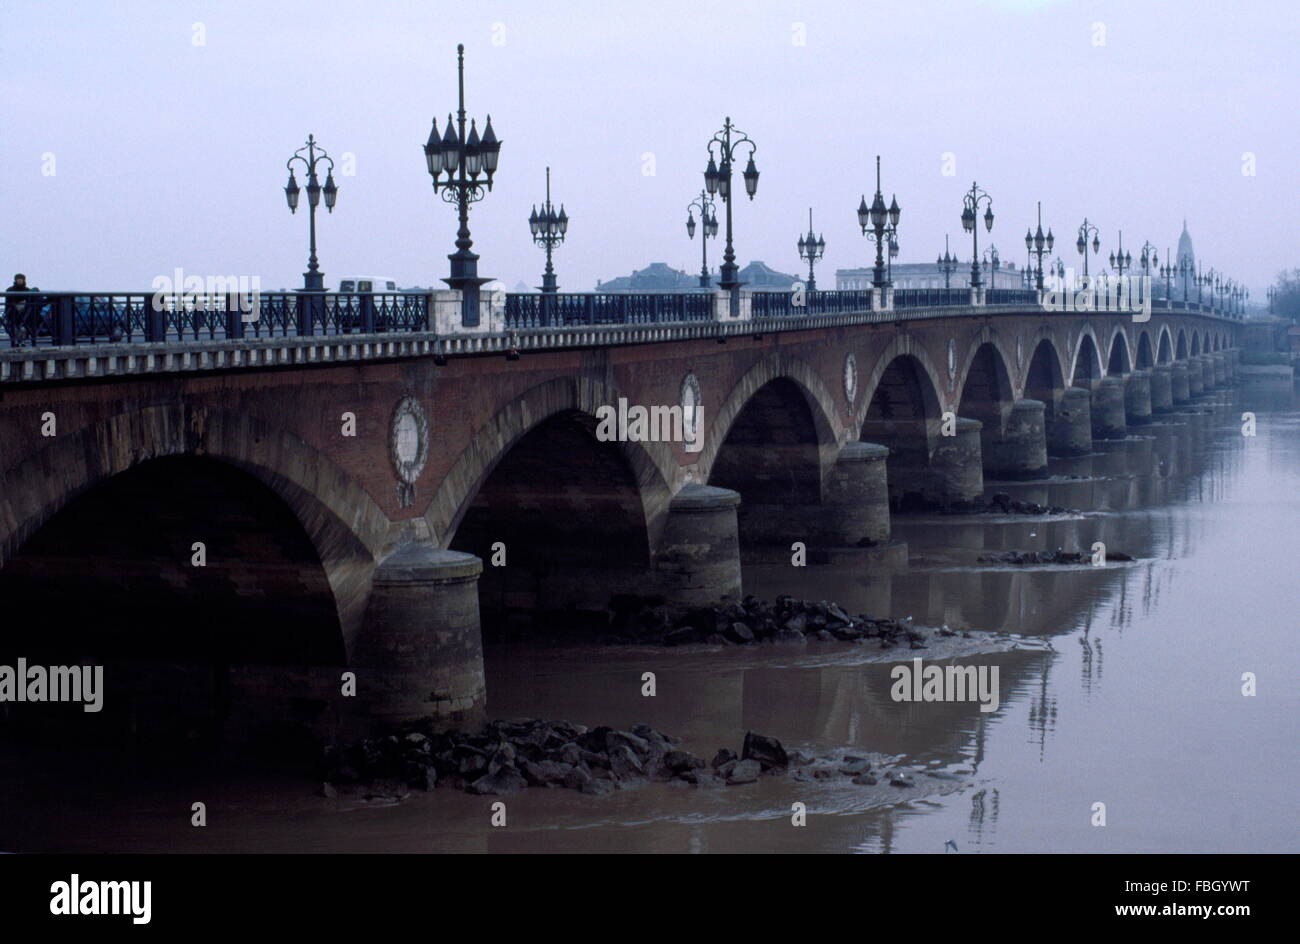 AJAXNETPHOTO. BORDEAUX, Francia. - Ponte di pietra - il Pont de Pierre, o il ponte di pietra, attraversando il fiume Garonne dalla città alla Bastide sobborgo. Foto:JONATHAN EASTLAND/AJAX REF:920177 Foto Stock